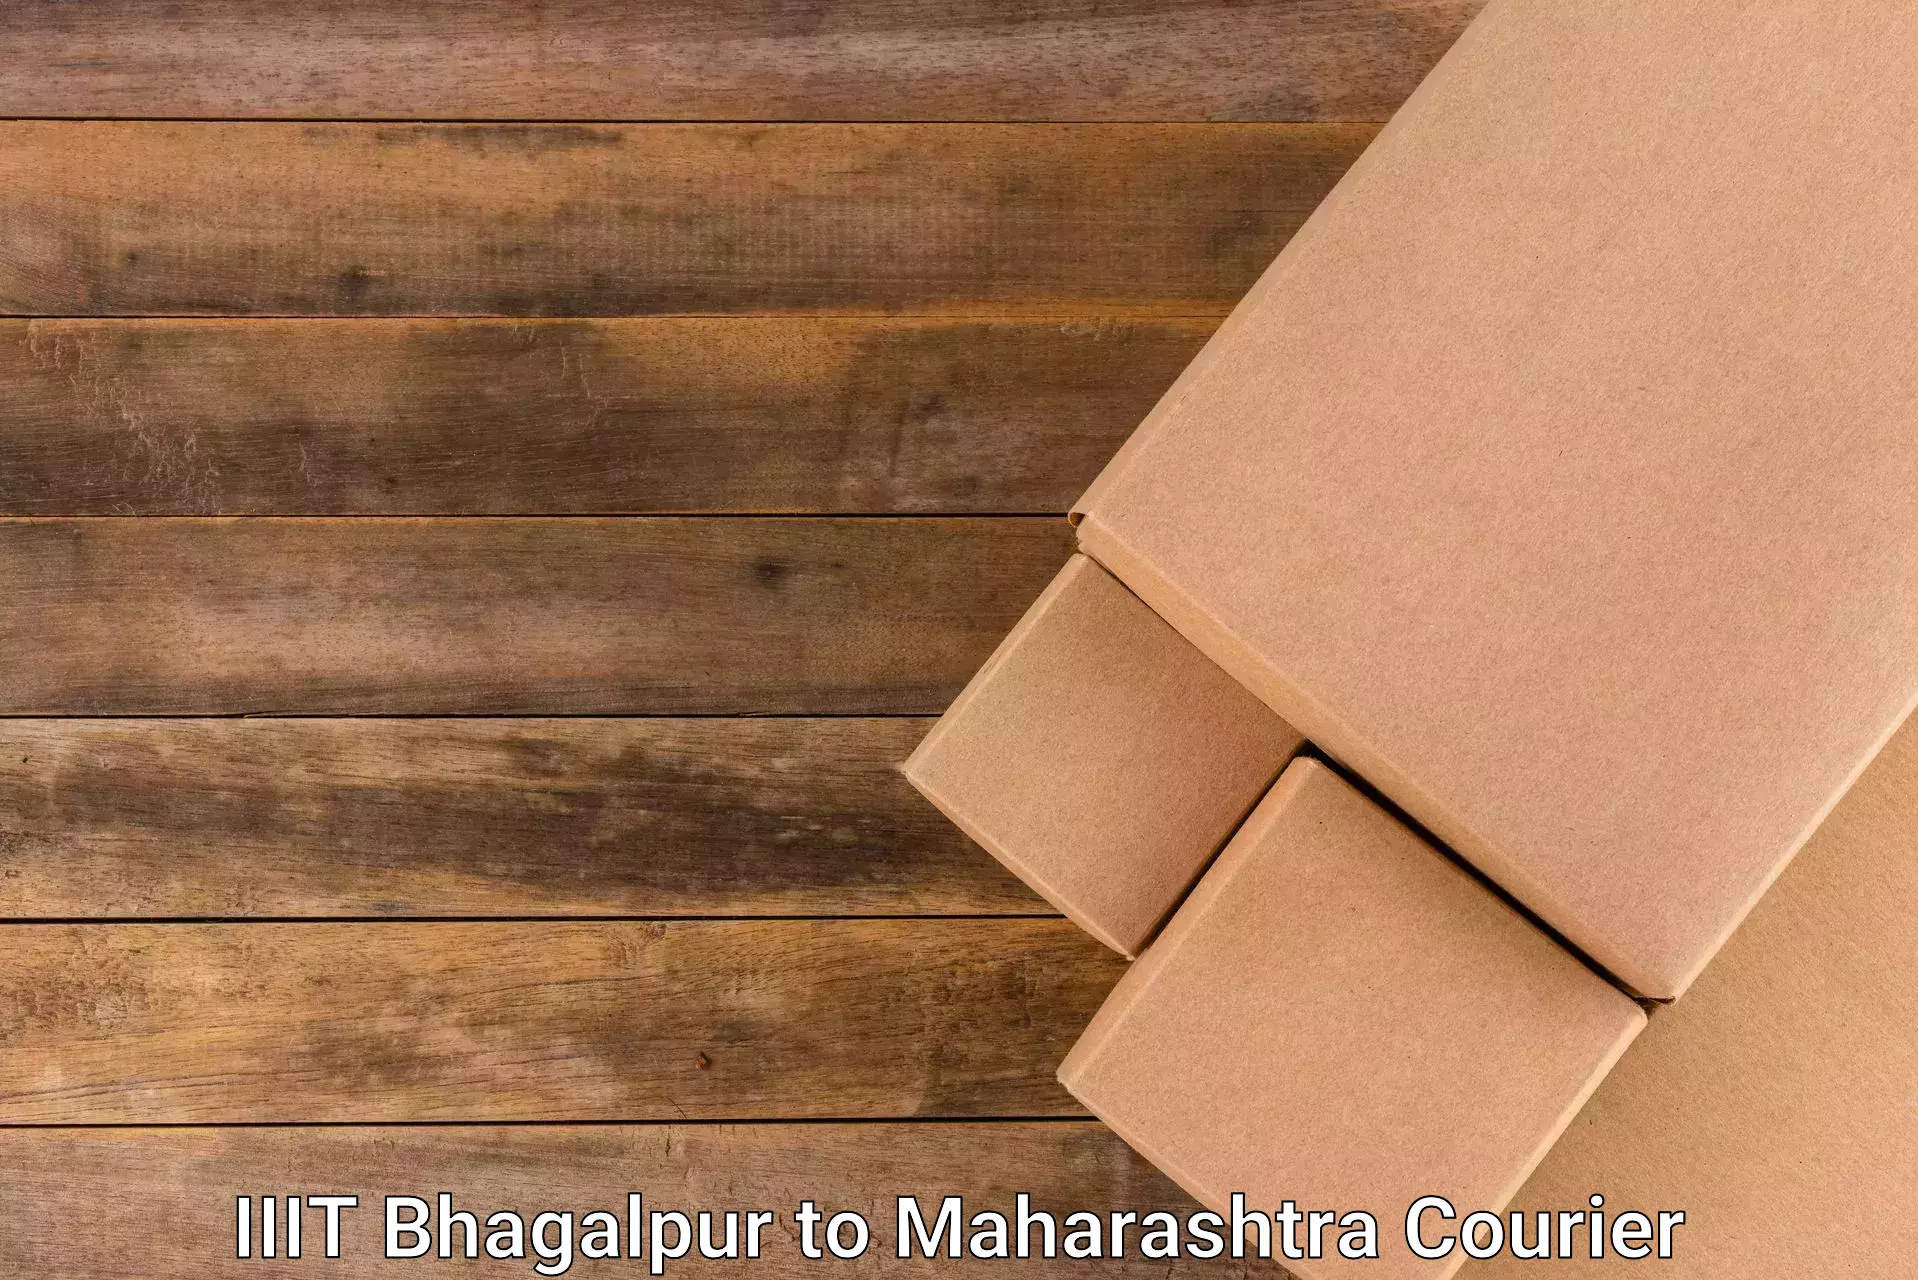 Customer-oriented courier services IIIT Bhagalpur to Ganpatipule